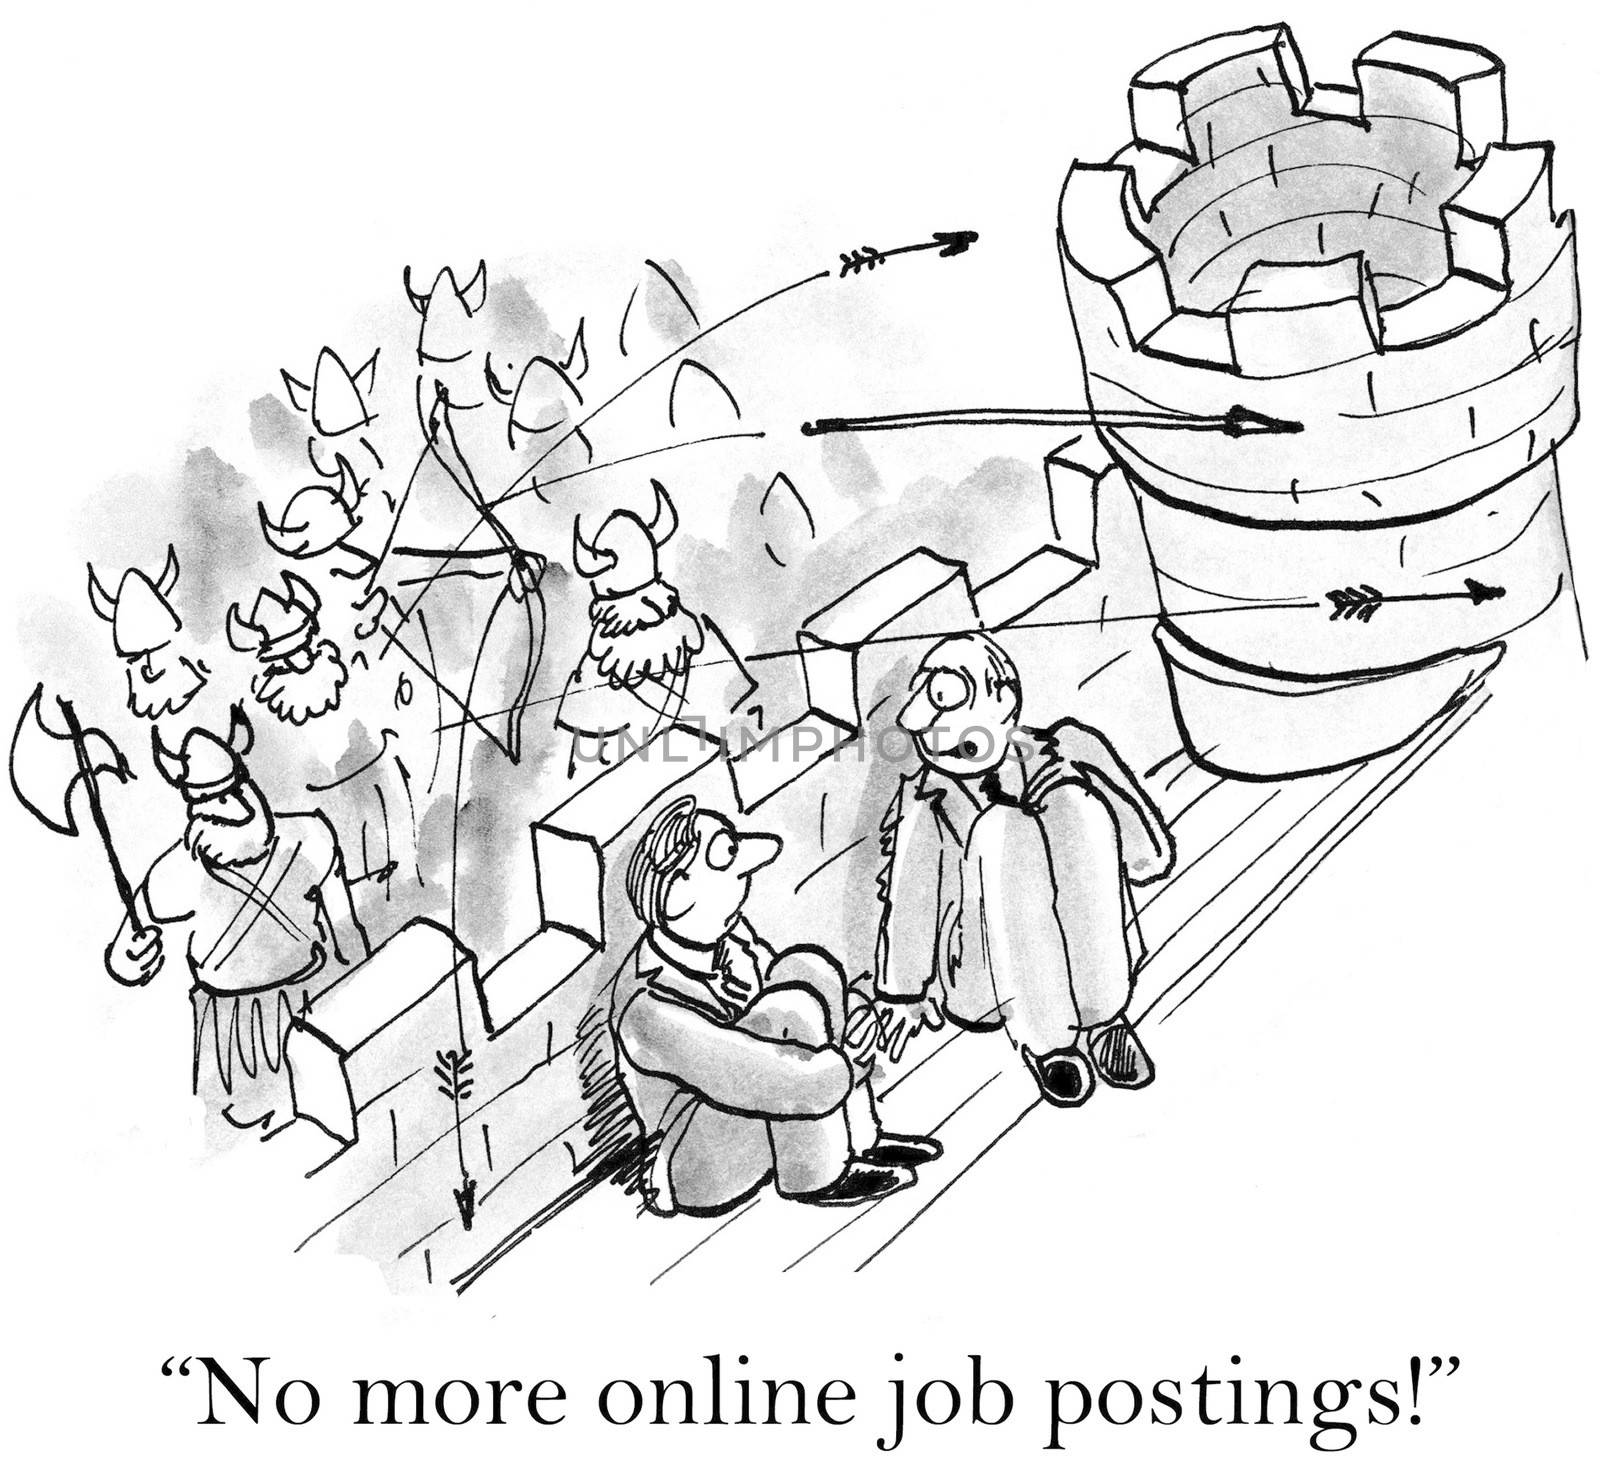 "No more online job postings!"